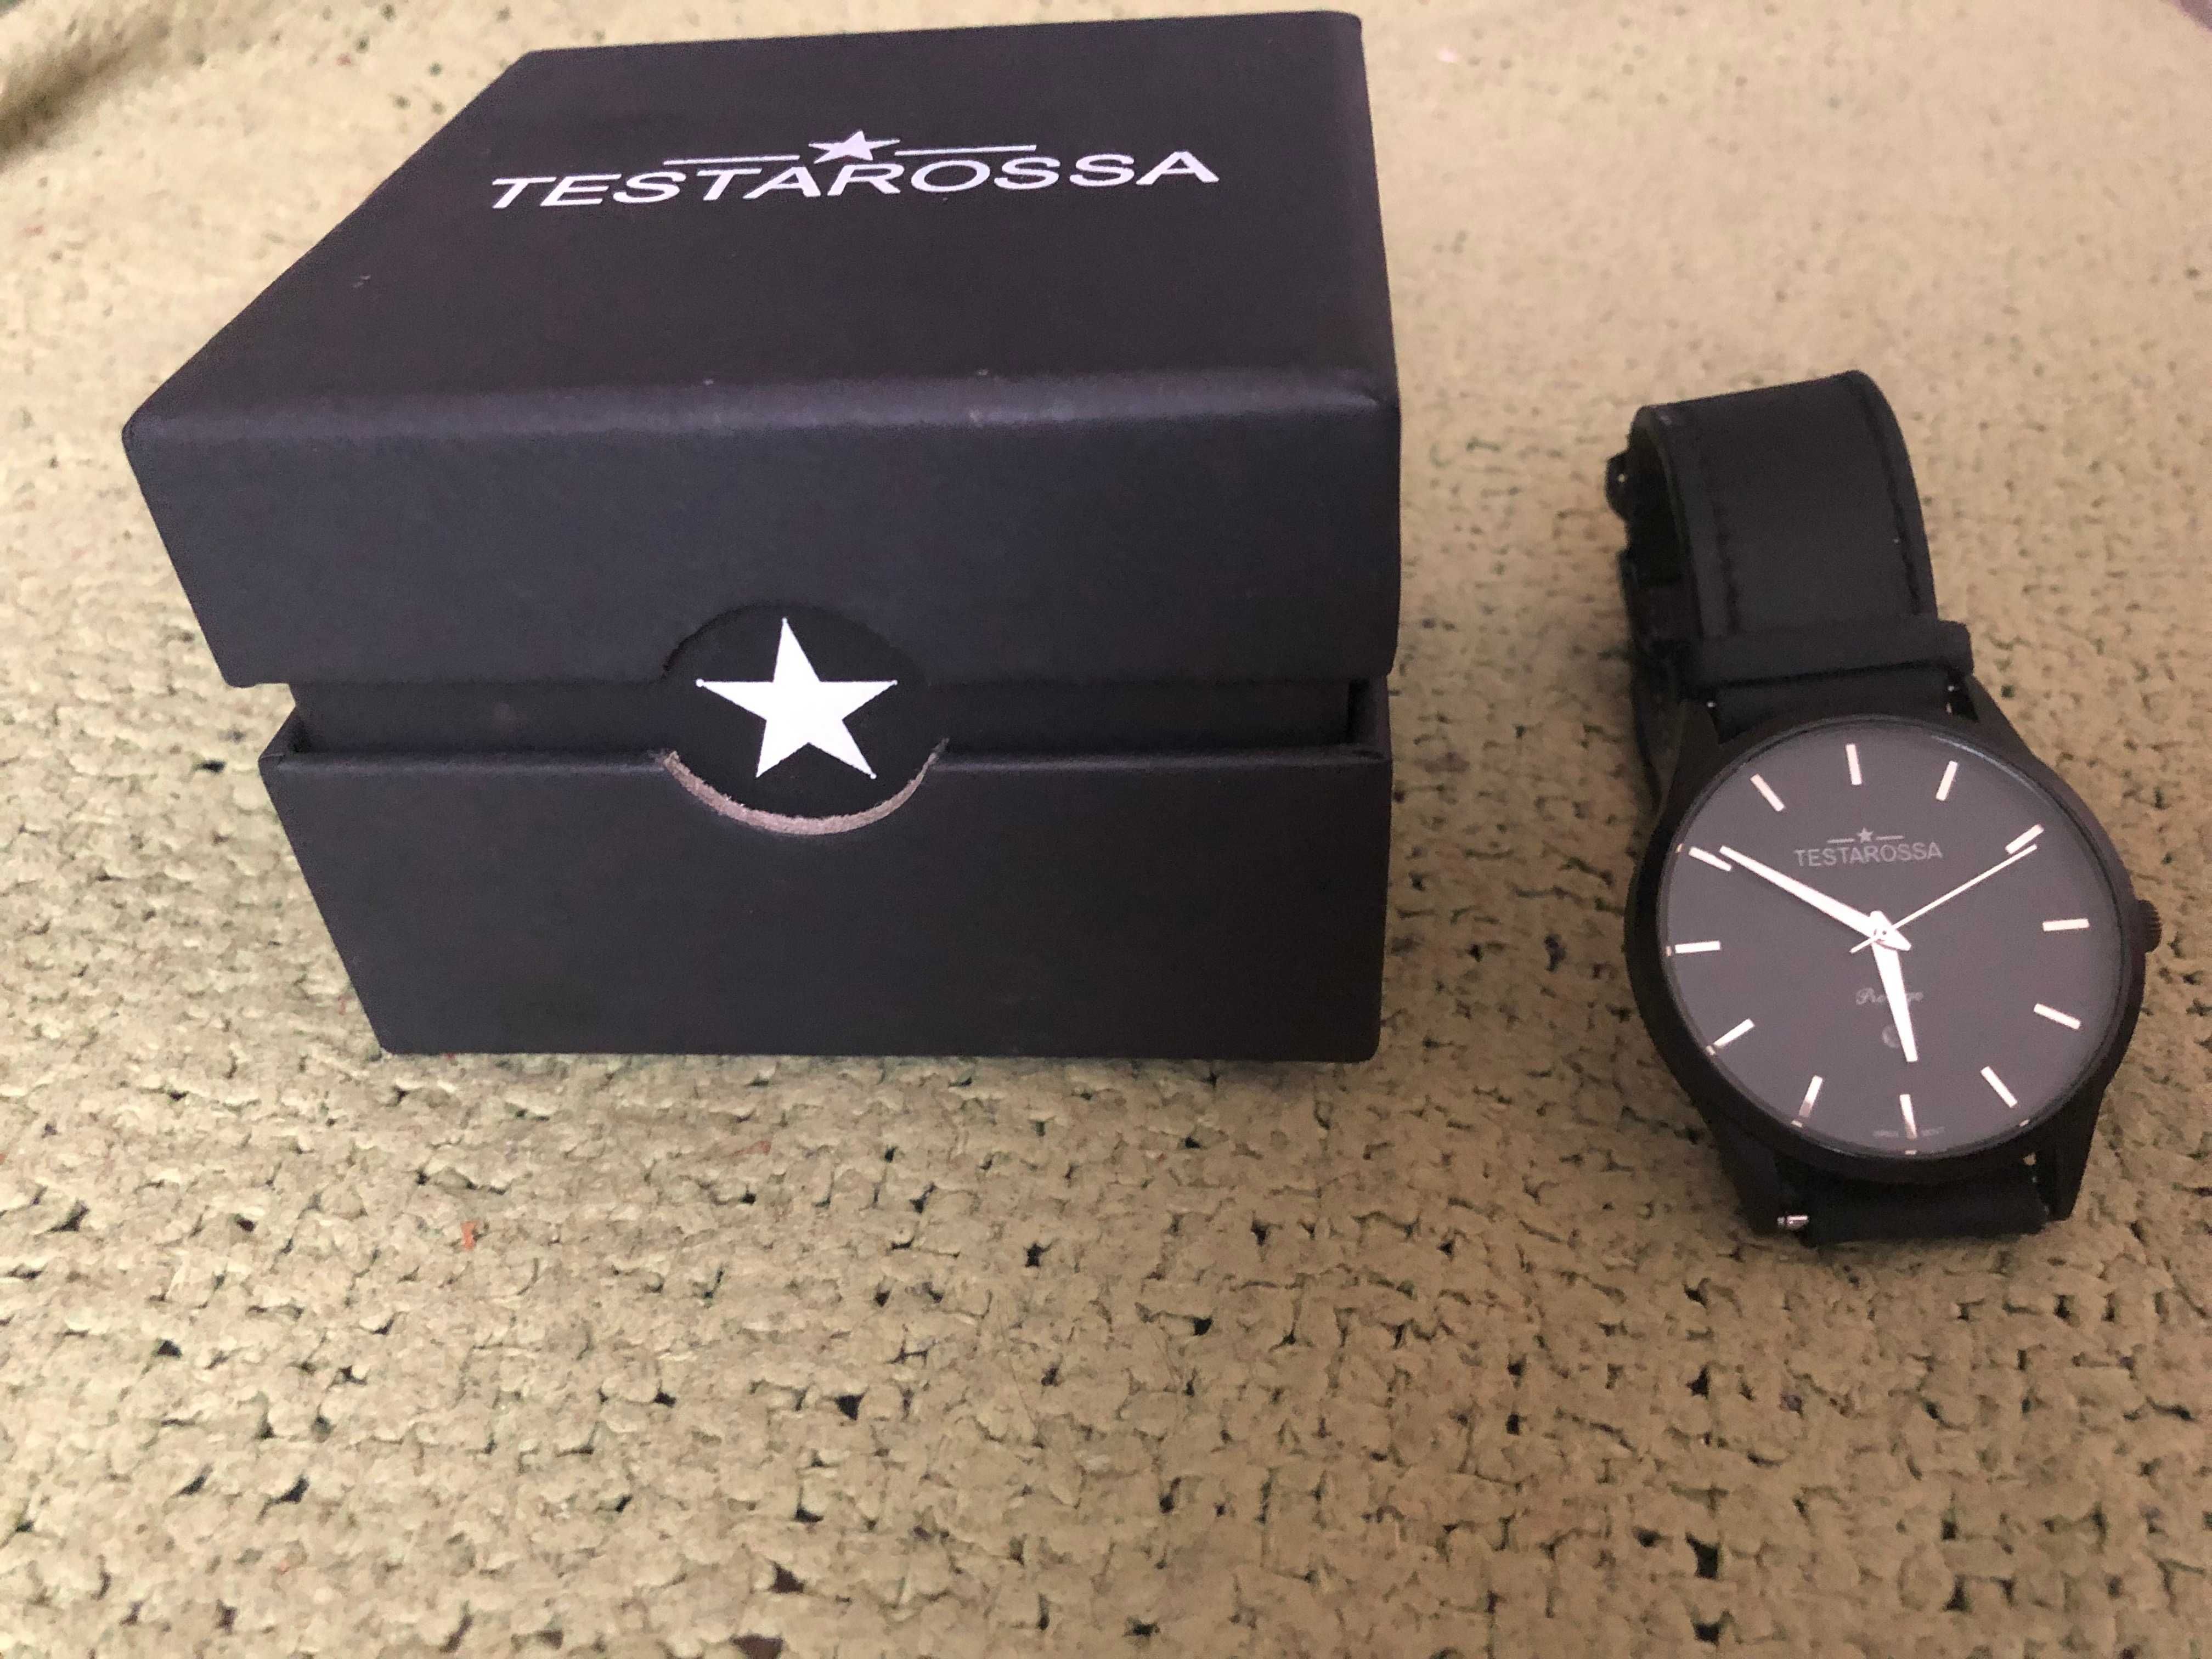 Zegarek TESTAROSSA PrestigeTR8150, datownik